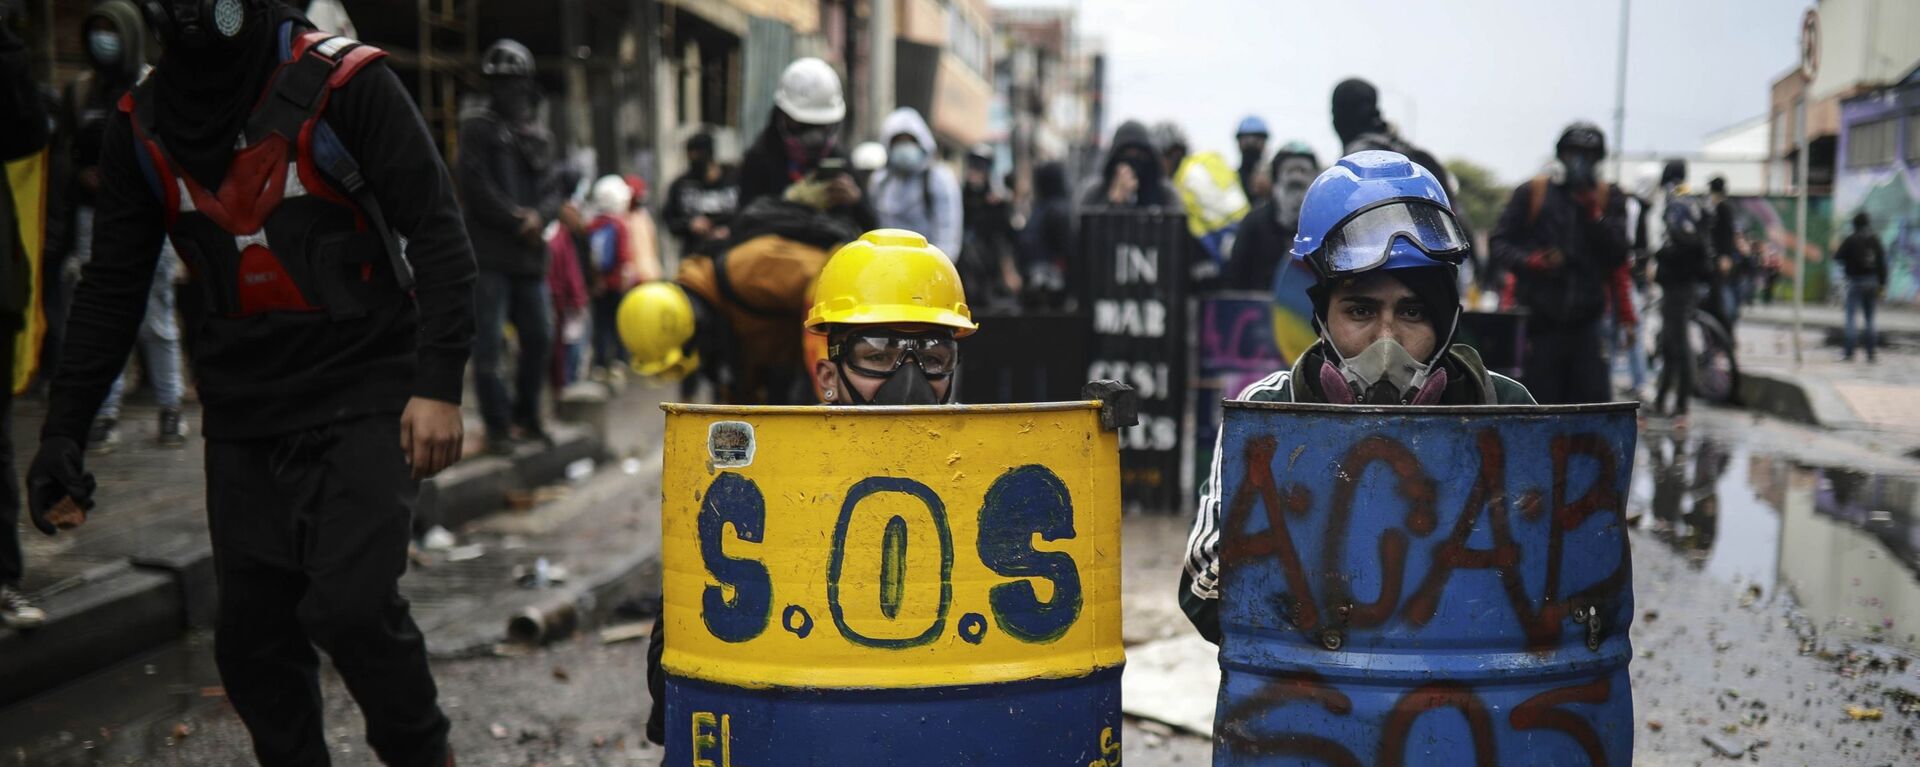 Антиправительственные протестующие прячутся за импровизированными щитами во время столкновений с полицией в Боготе, Колумбия - Sputnik Mundo, 1920, 19.07.2021